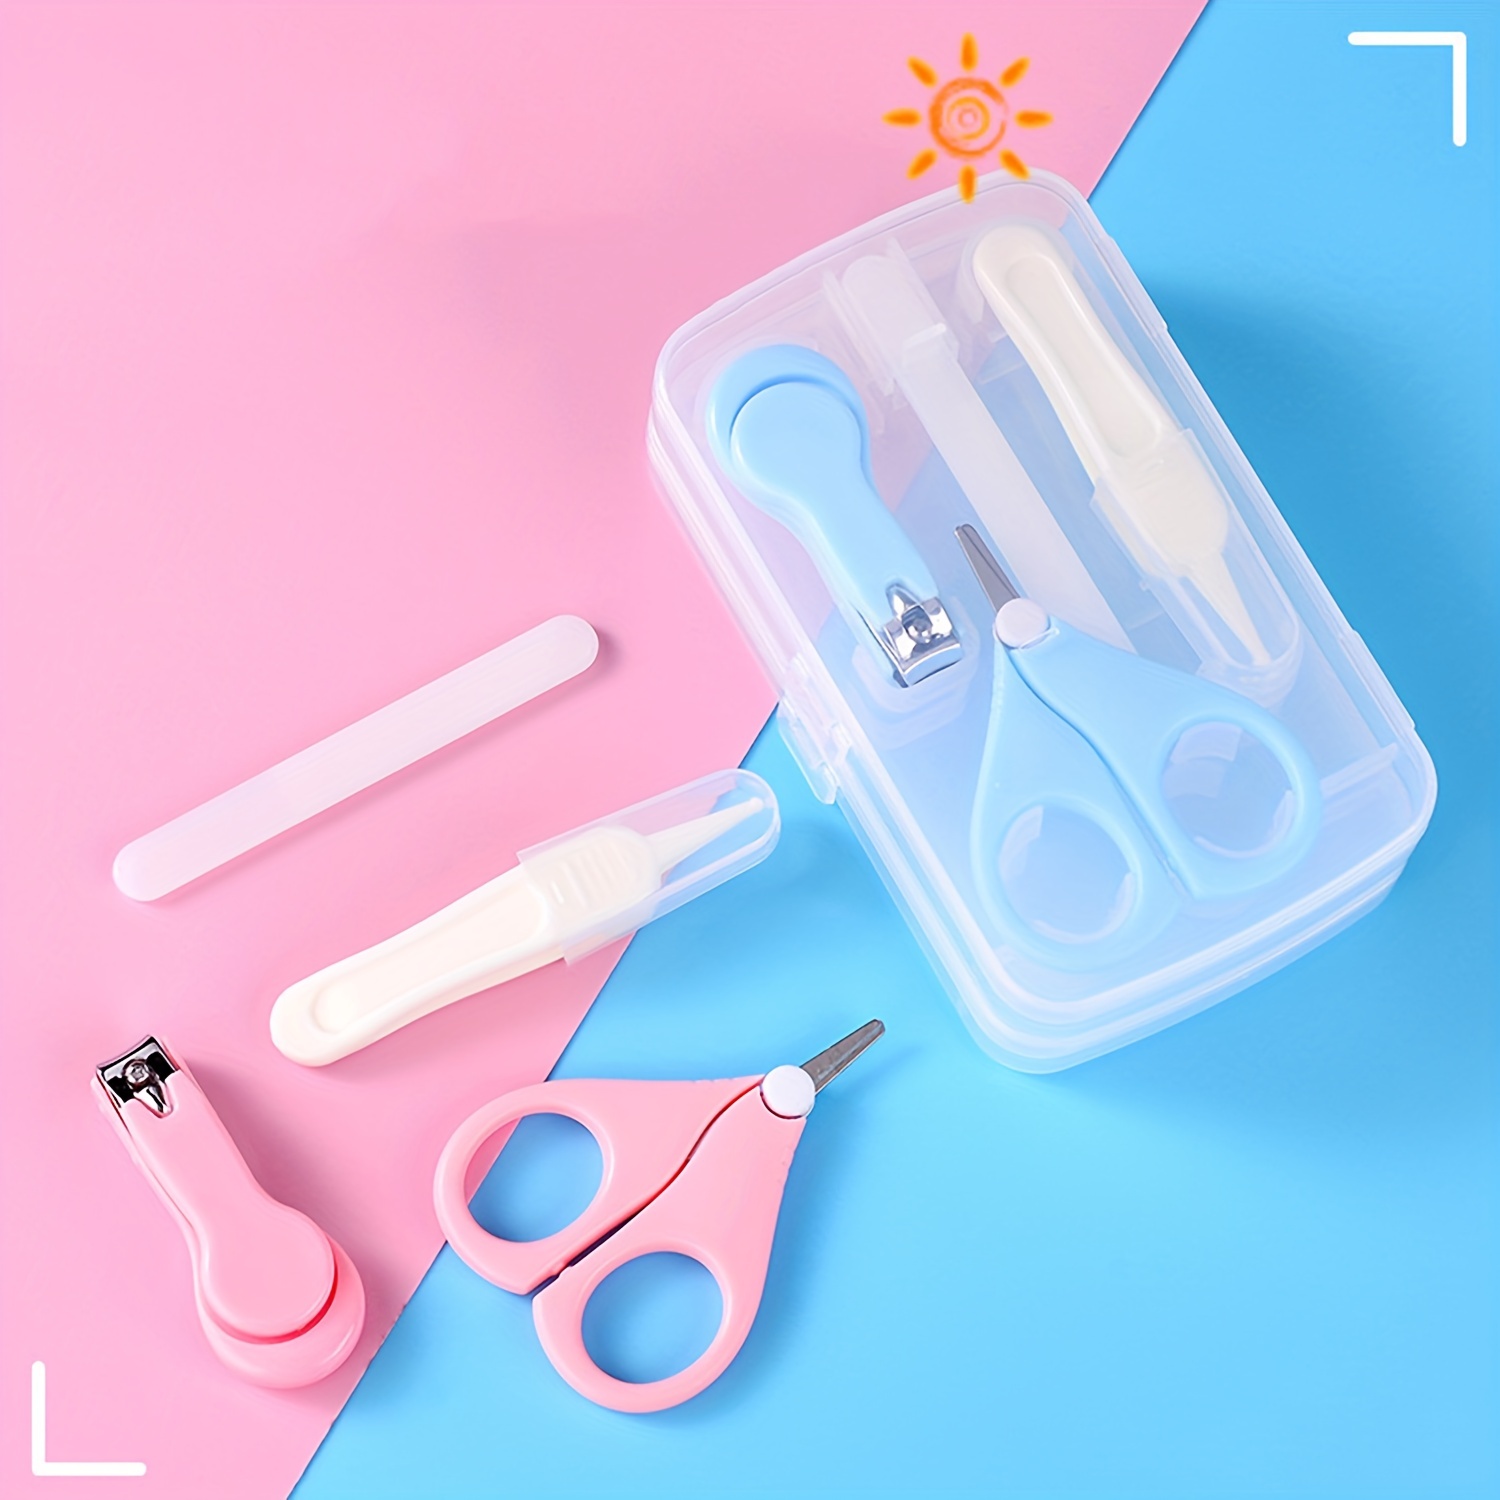  Kit de uñas para bebés, productos para el cuidado del bebé, kit  de aseo para bebés, cortaúñas, tijeras, lima y pinzas, kit de manicura para  bebés, kit de pedicura para recién